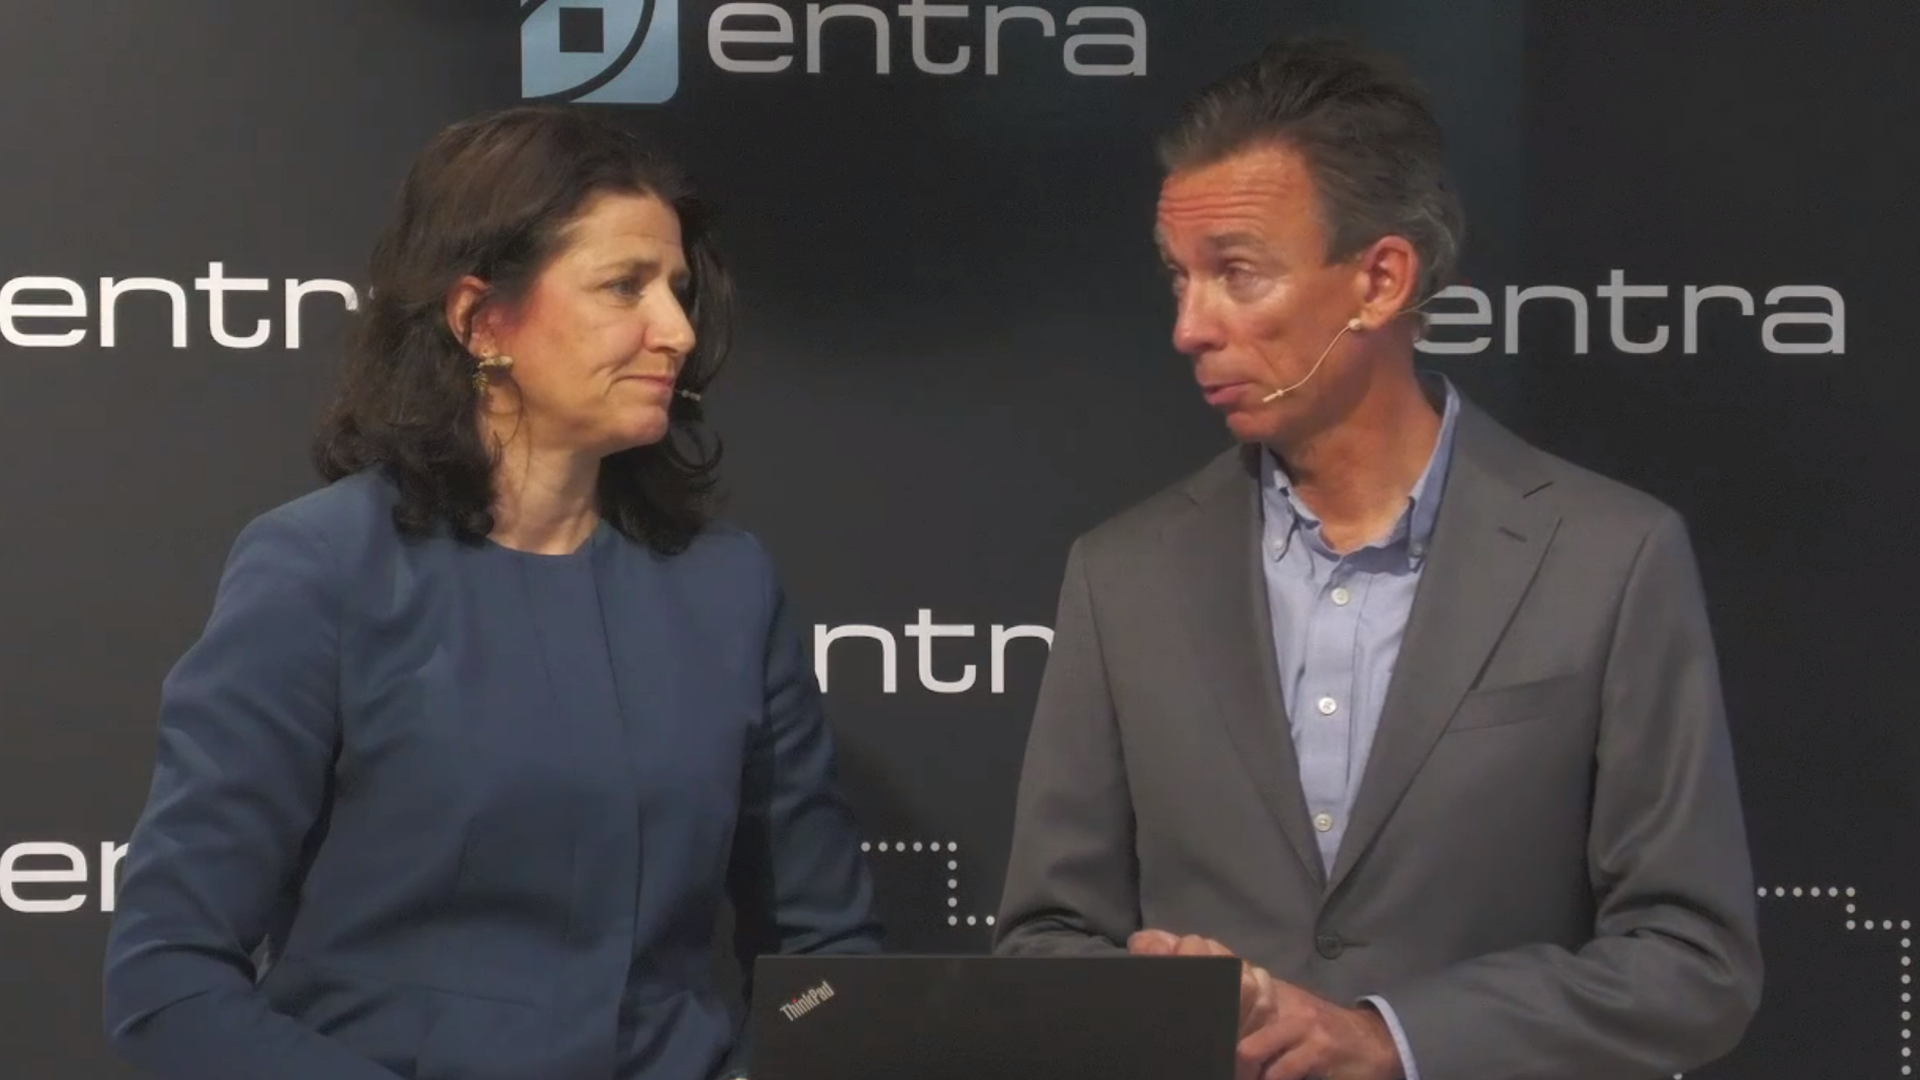 BLIR NEDGRADERT: Administrerende direktør Sonja Horn og Anders Olstad i Entra. | Foto: skjermdump av webcast på Entras hjemmeside